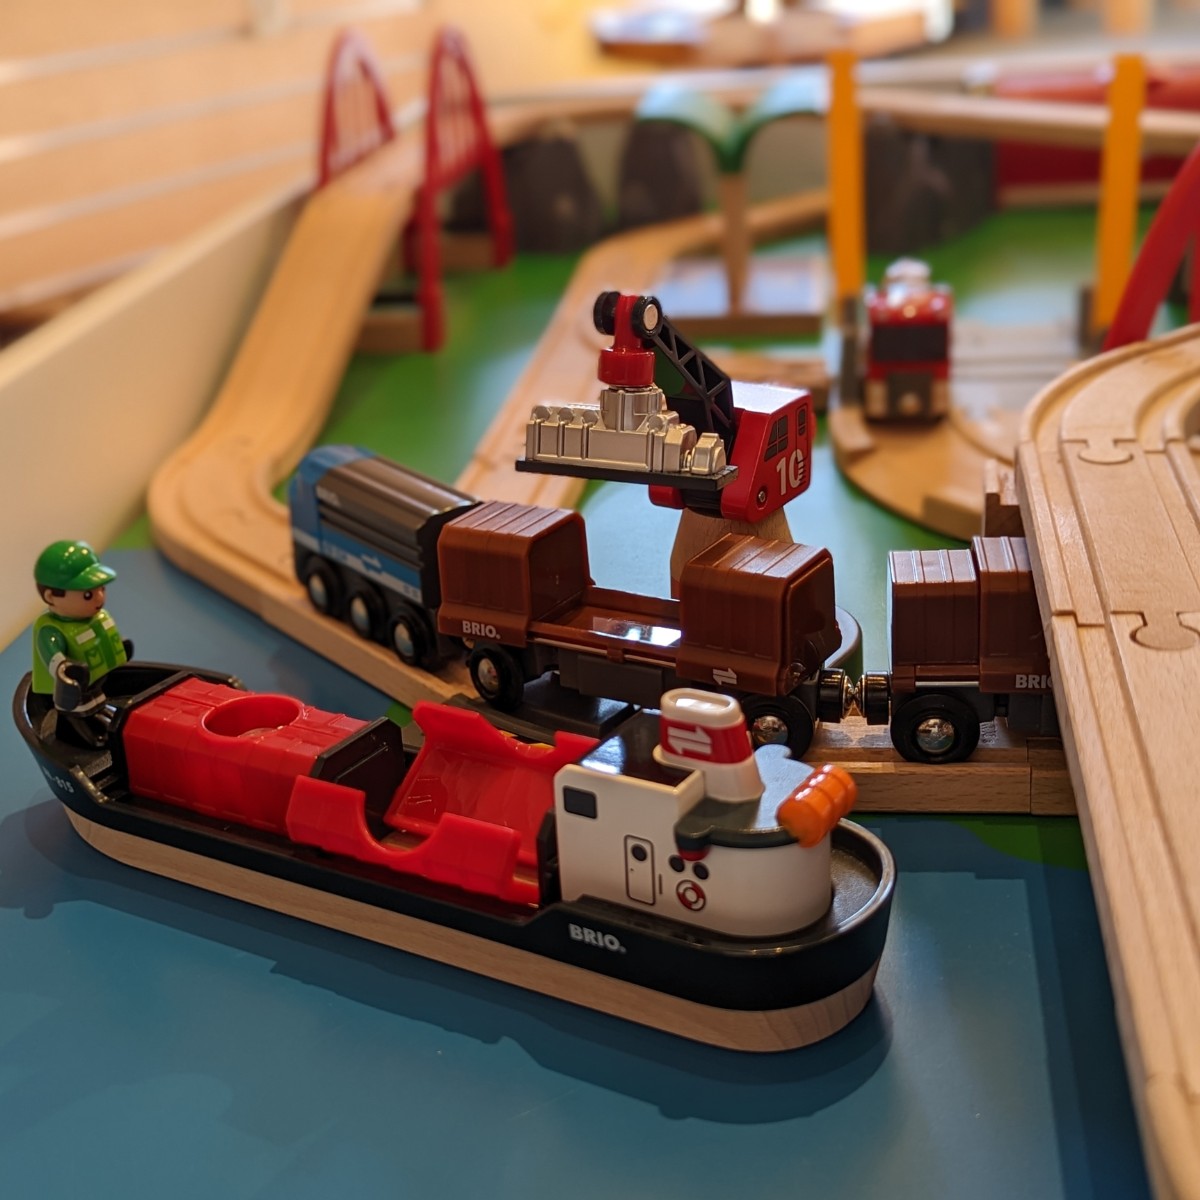 Brio wooden steamer boat set for children on sale at WonderLab.